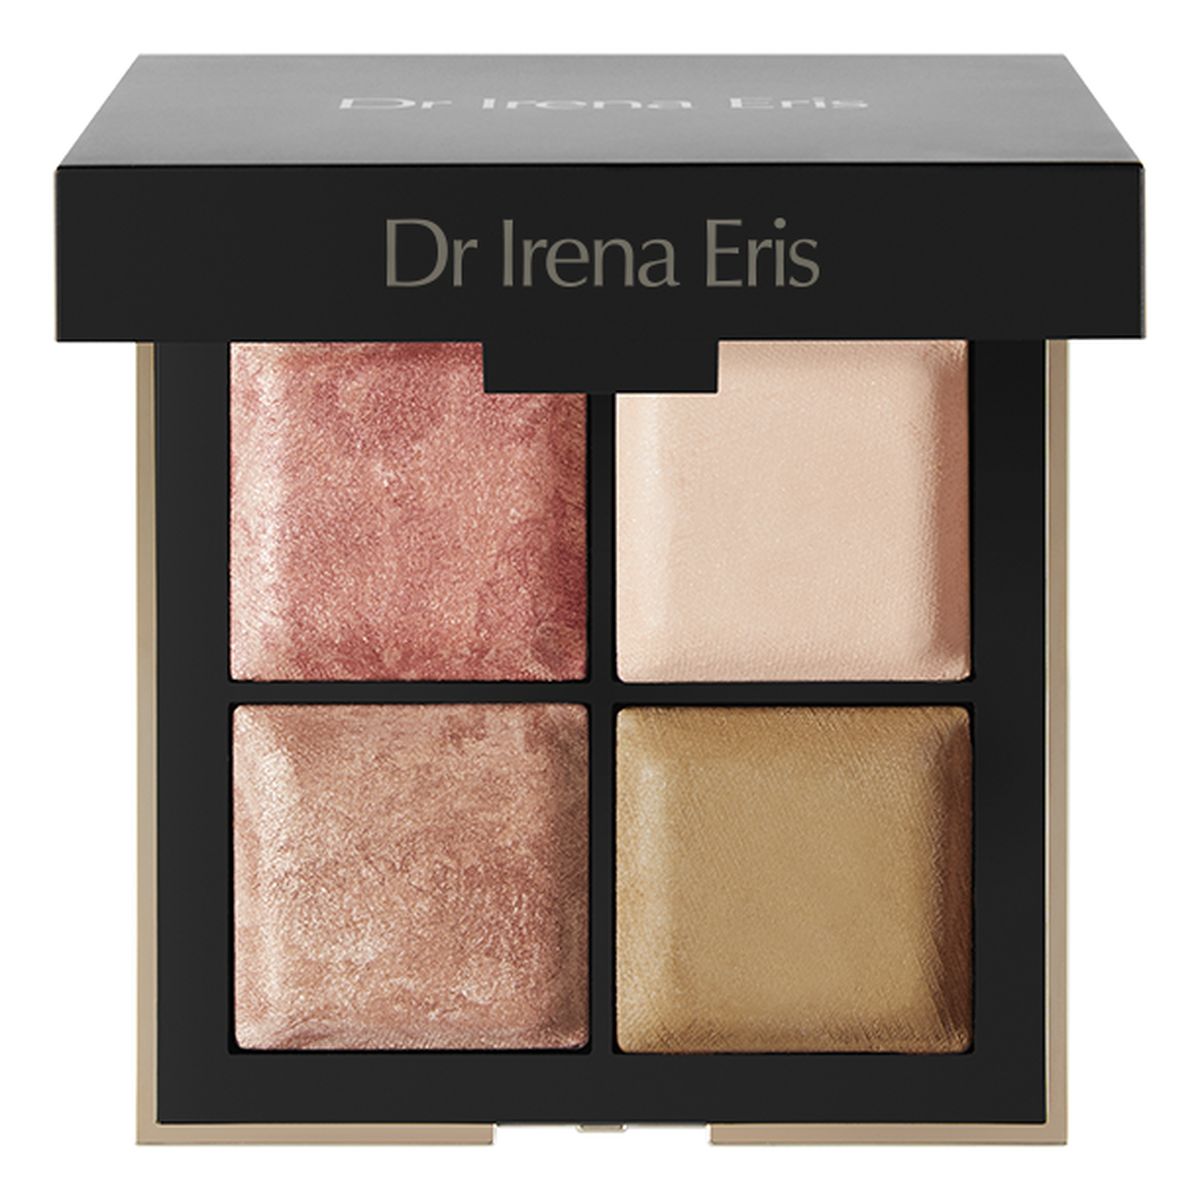 Dr Irena Eris Hybrid Face & Eye Palette Paleta do makijażu Edycja limitowana 20g